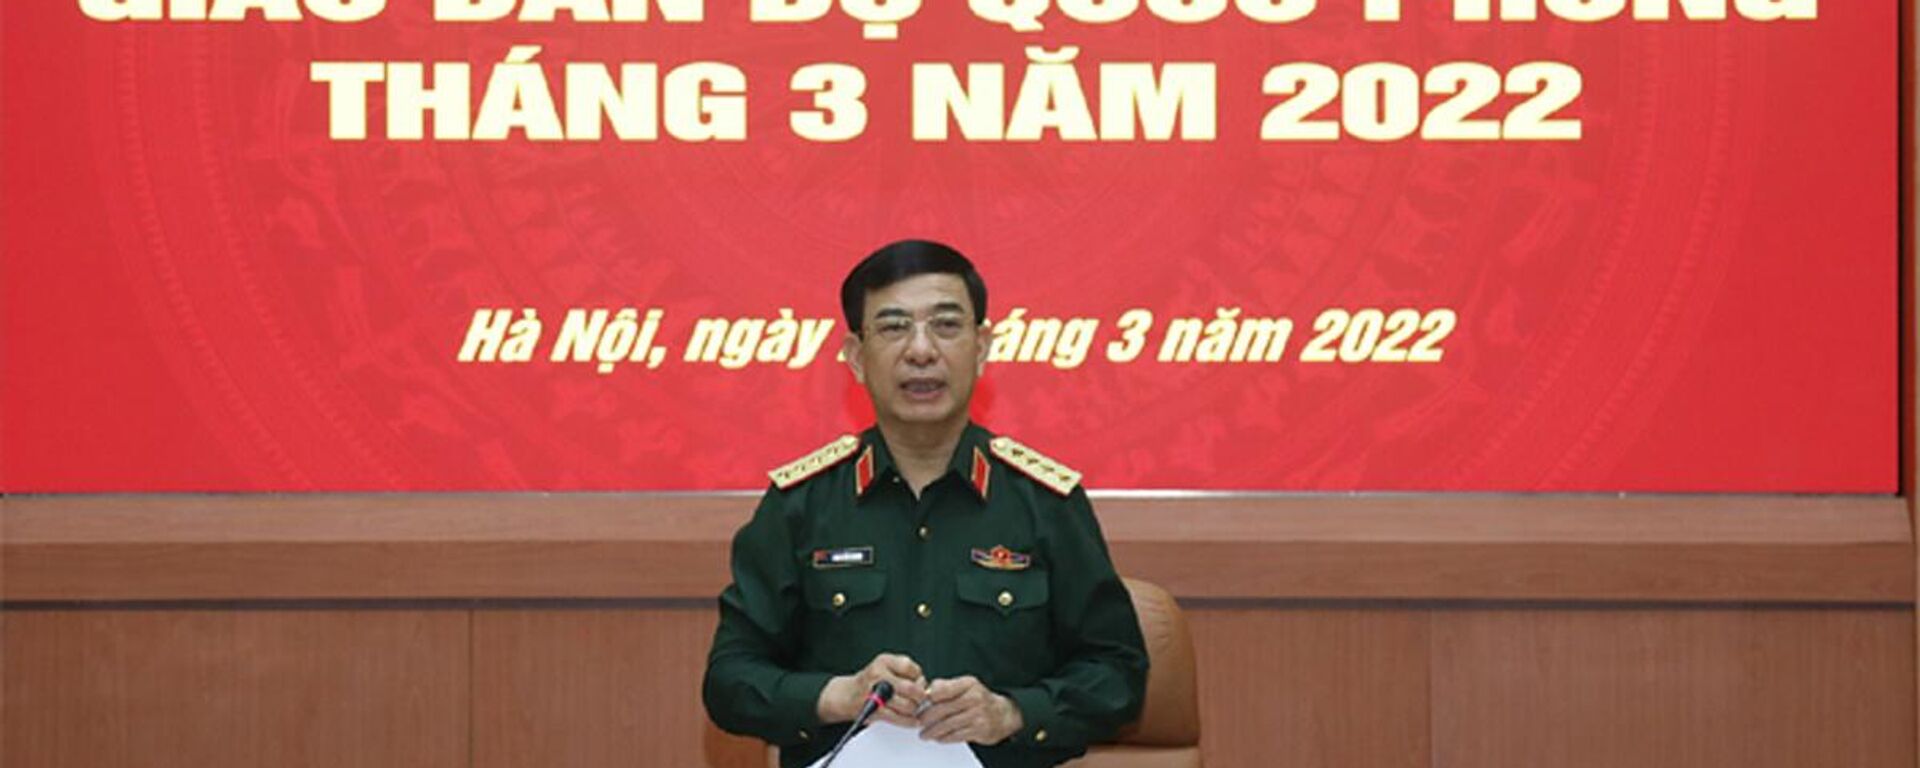 Đại tướng Phan Văn Giang phát biểu tại hội nghị - Sputnik Việt Nam, 1920, 30.03.2022